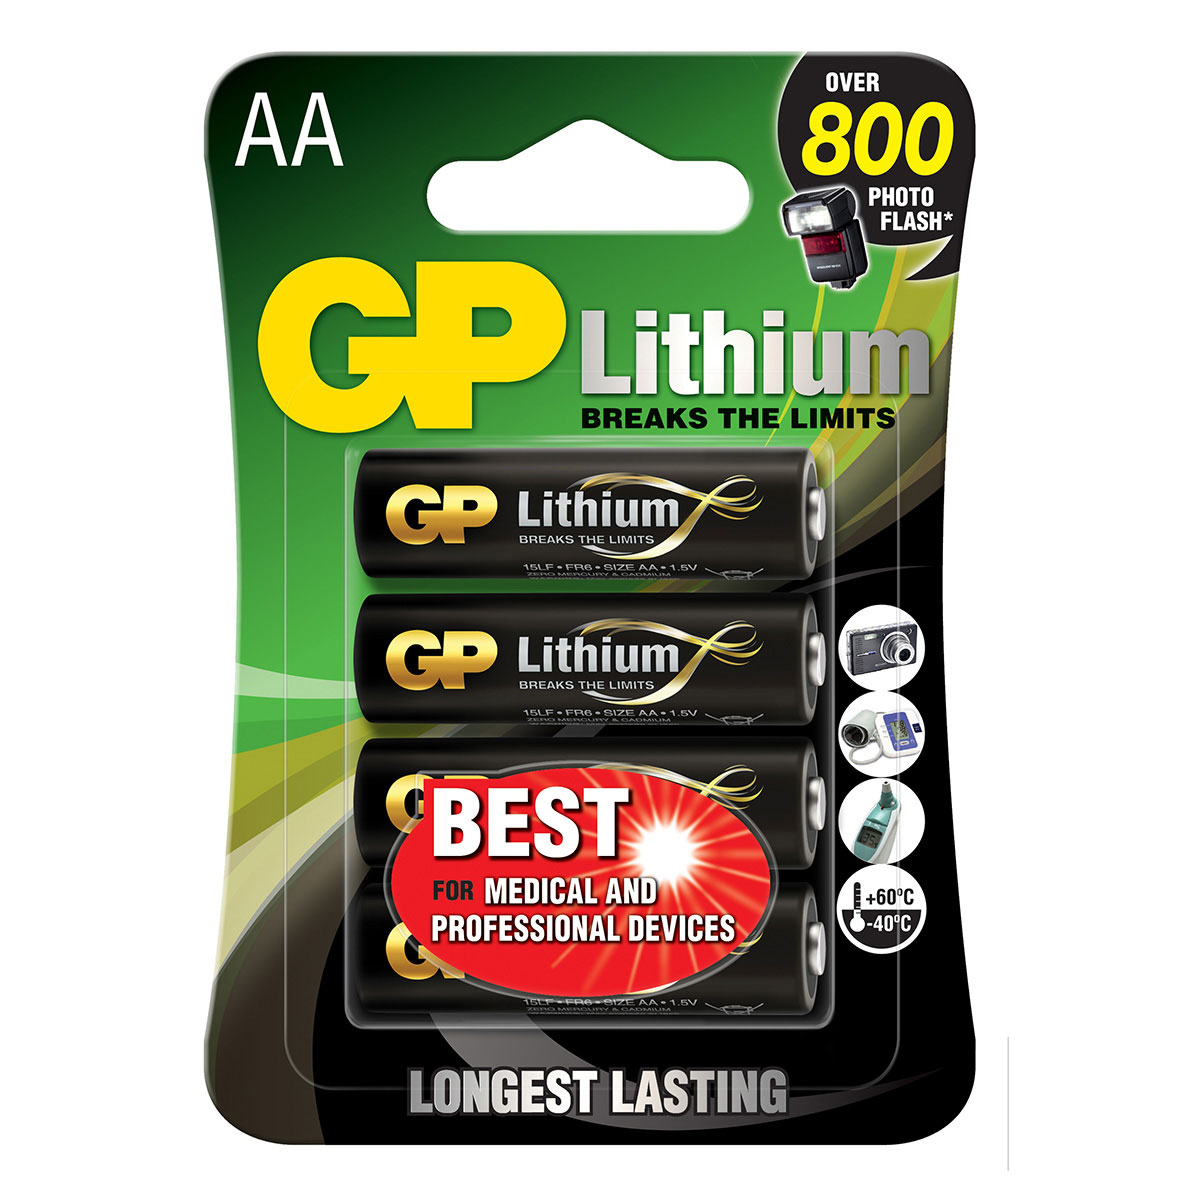 Politik tonehøjde Undertrykke GP Excellent AA batterier 1,5V (Lithium) 4-Pack